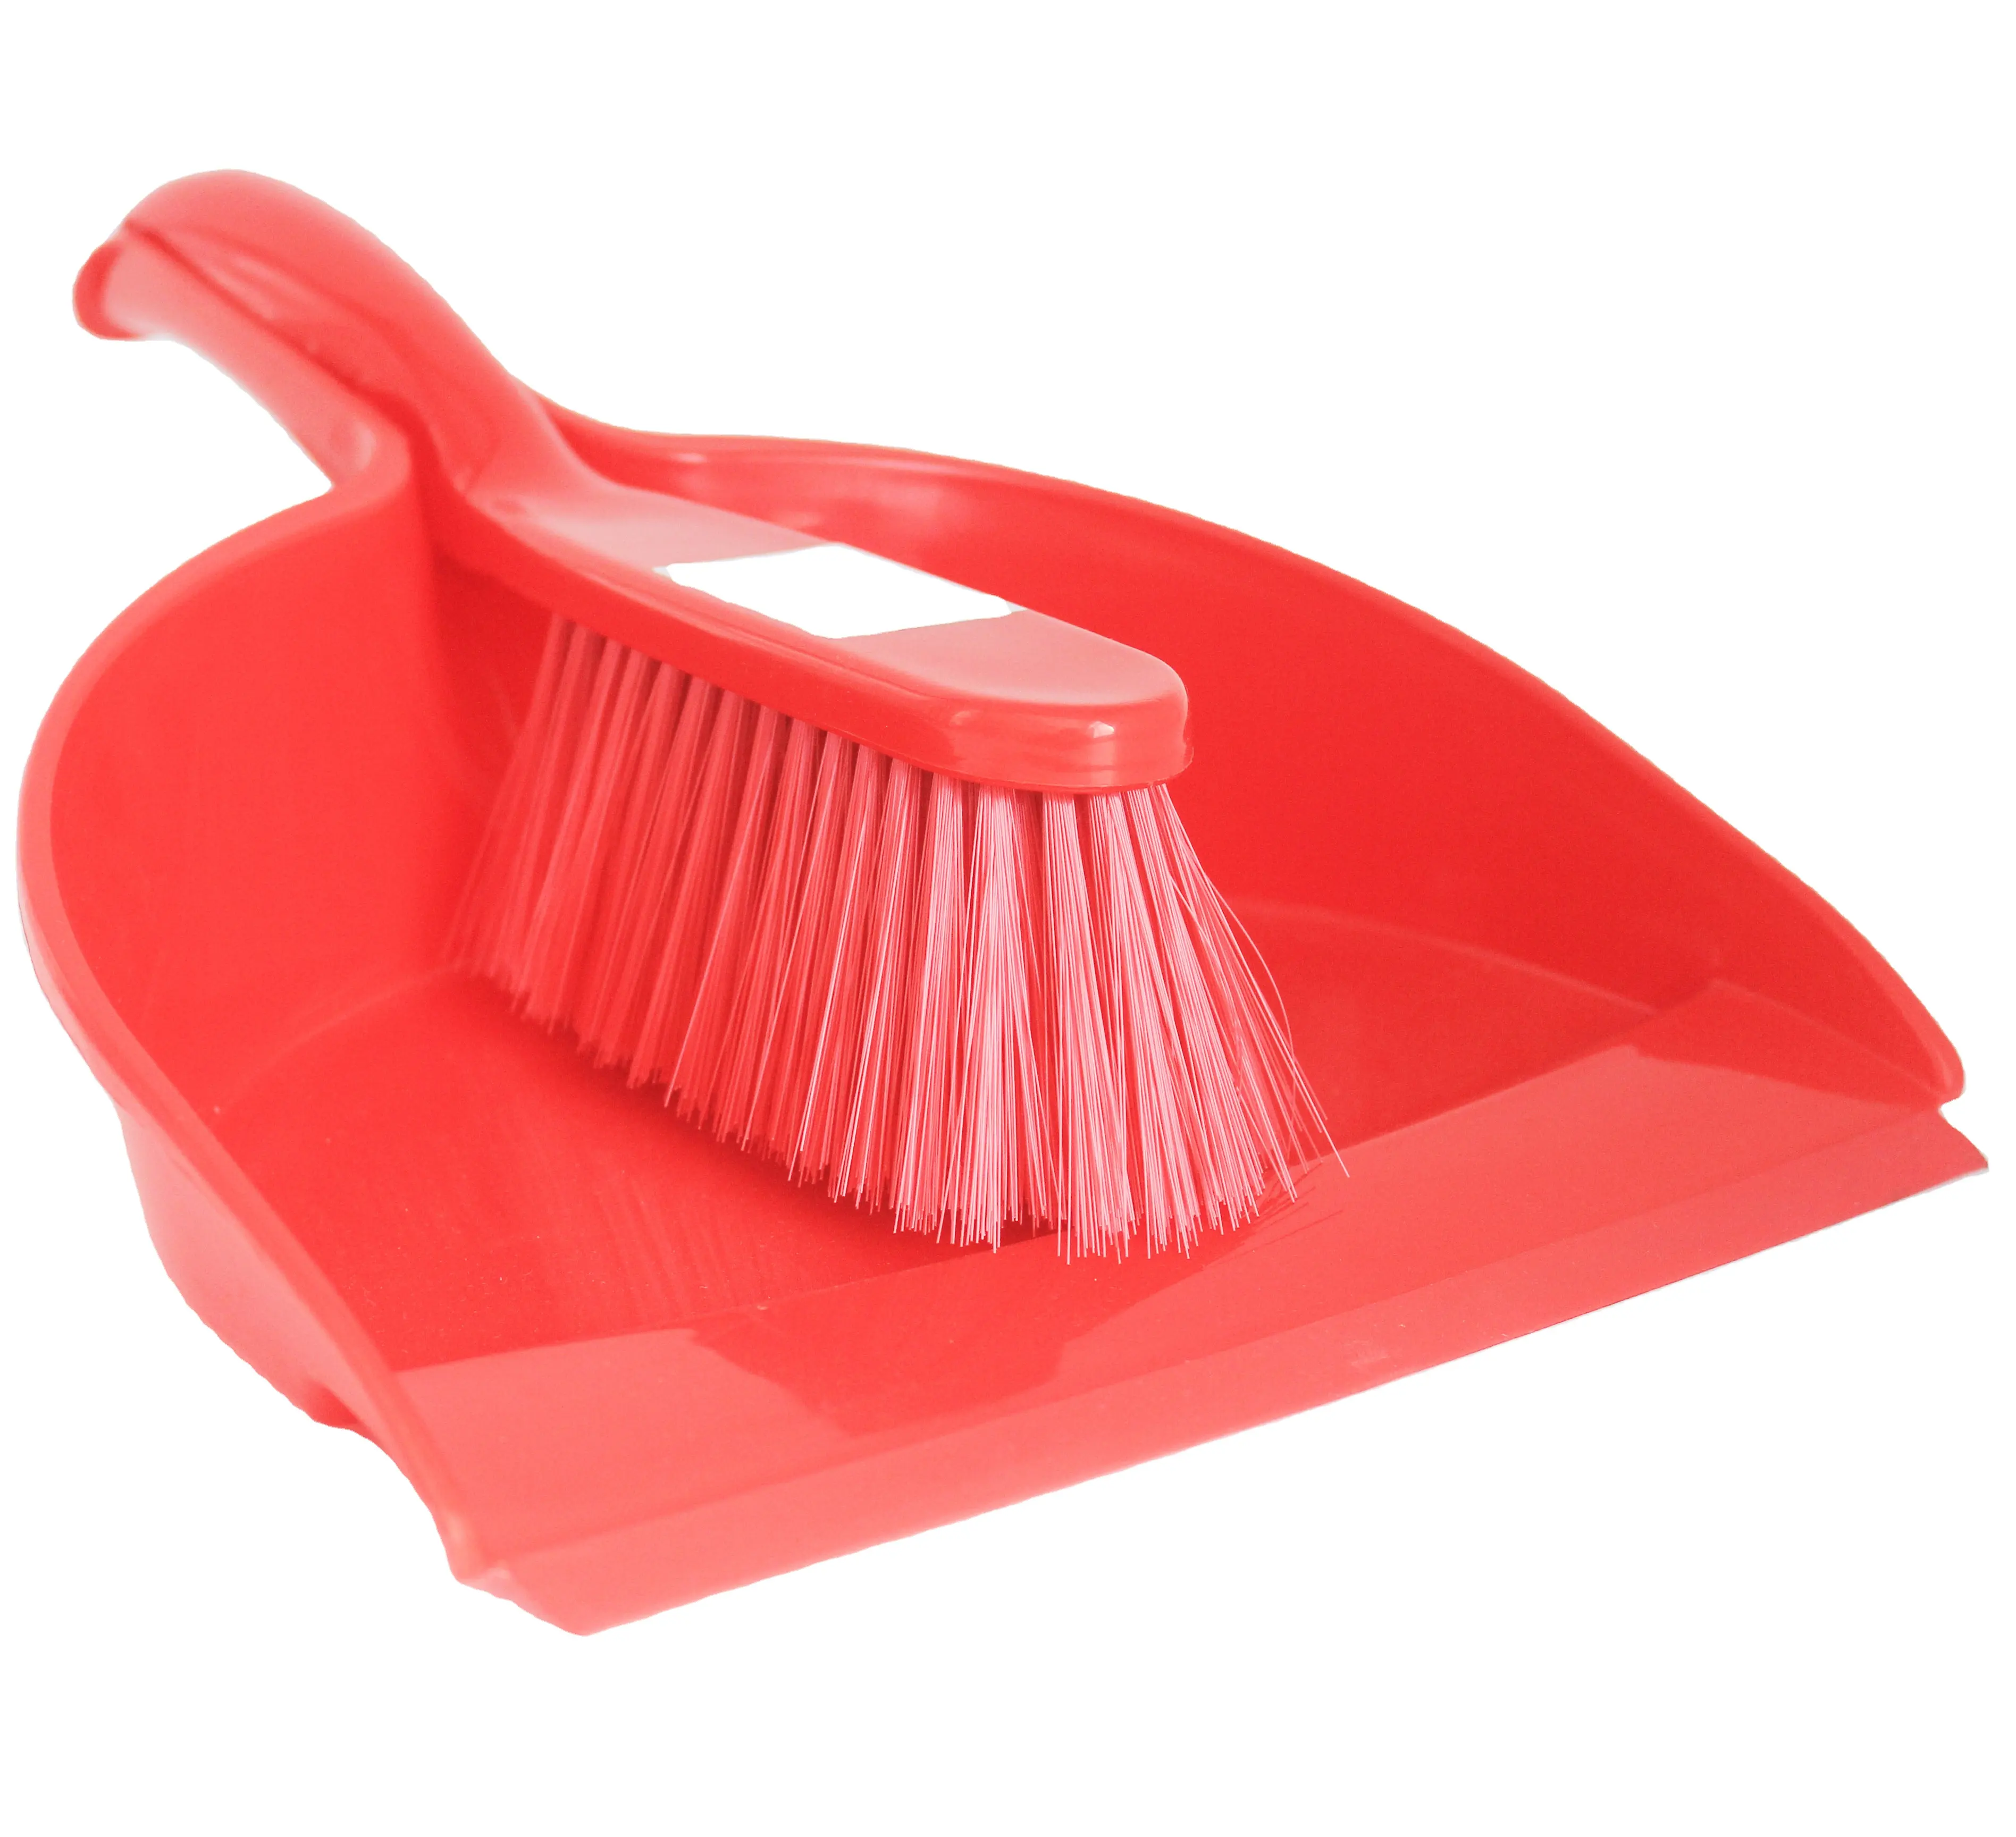 Dustpan and brush set Short Handle Plastic Dustpan with soft bristle